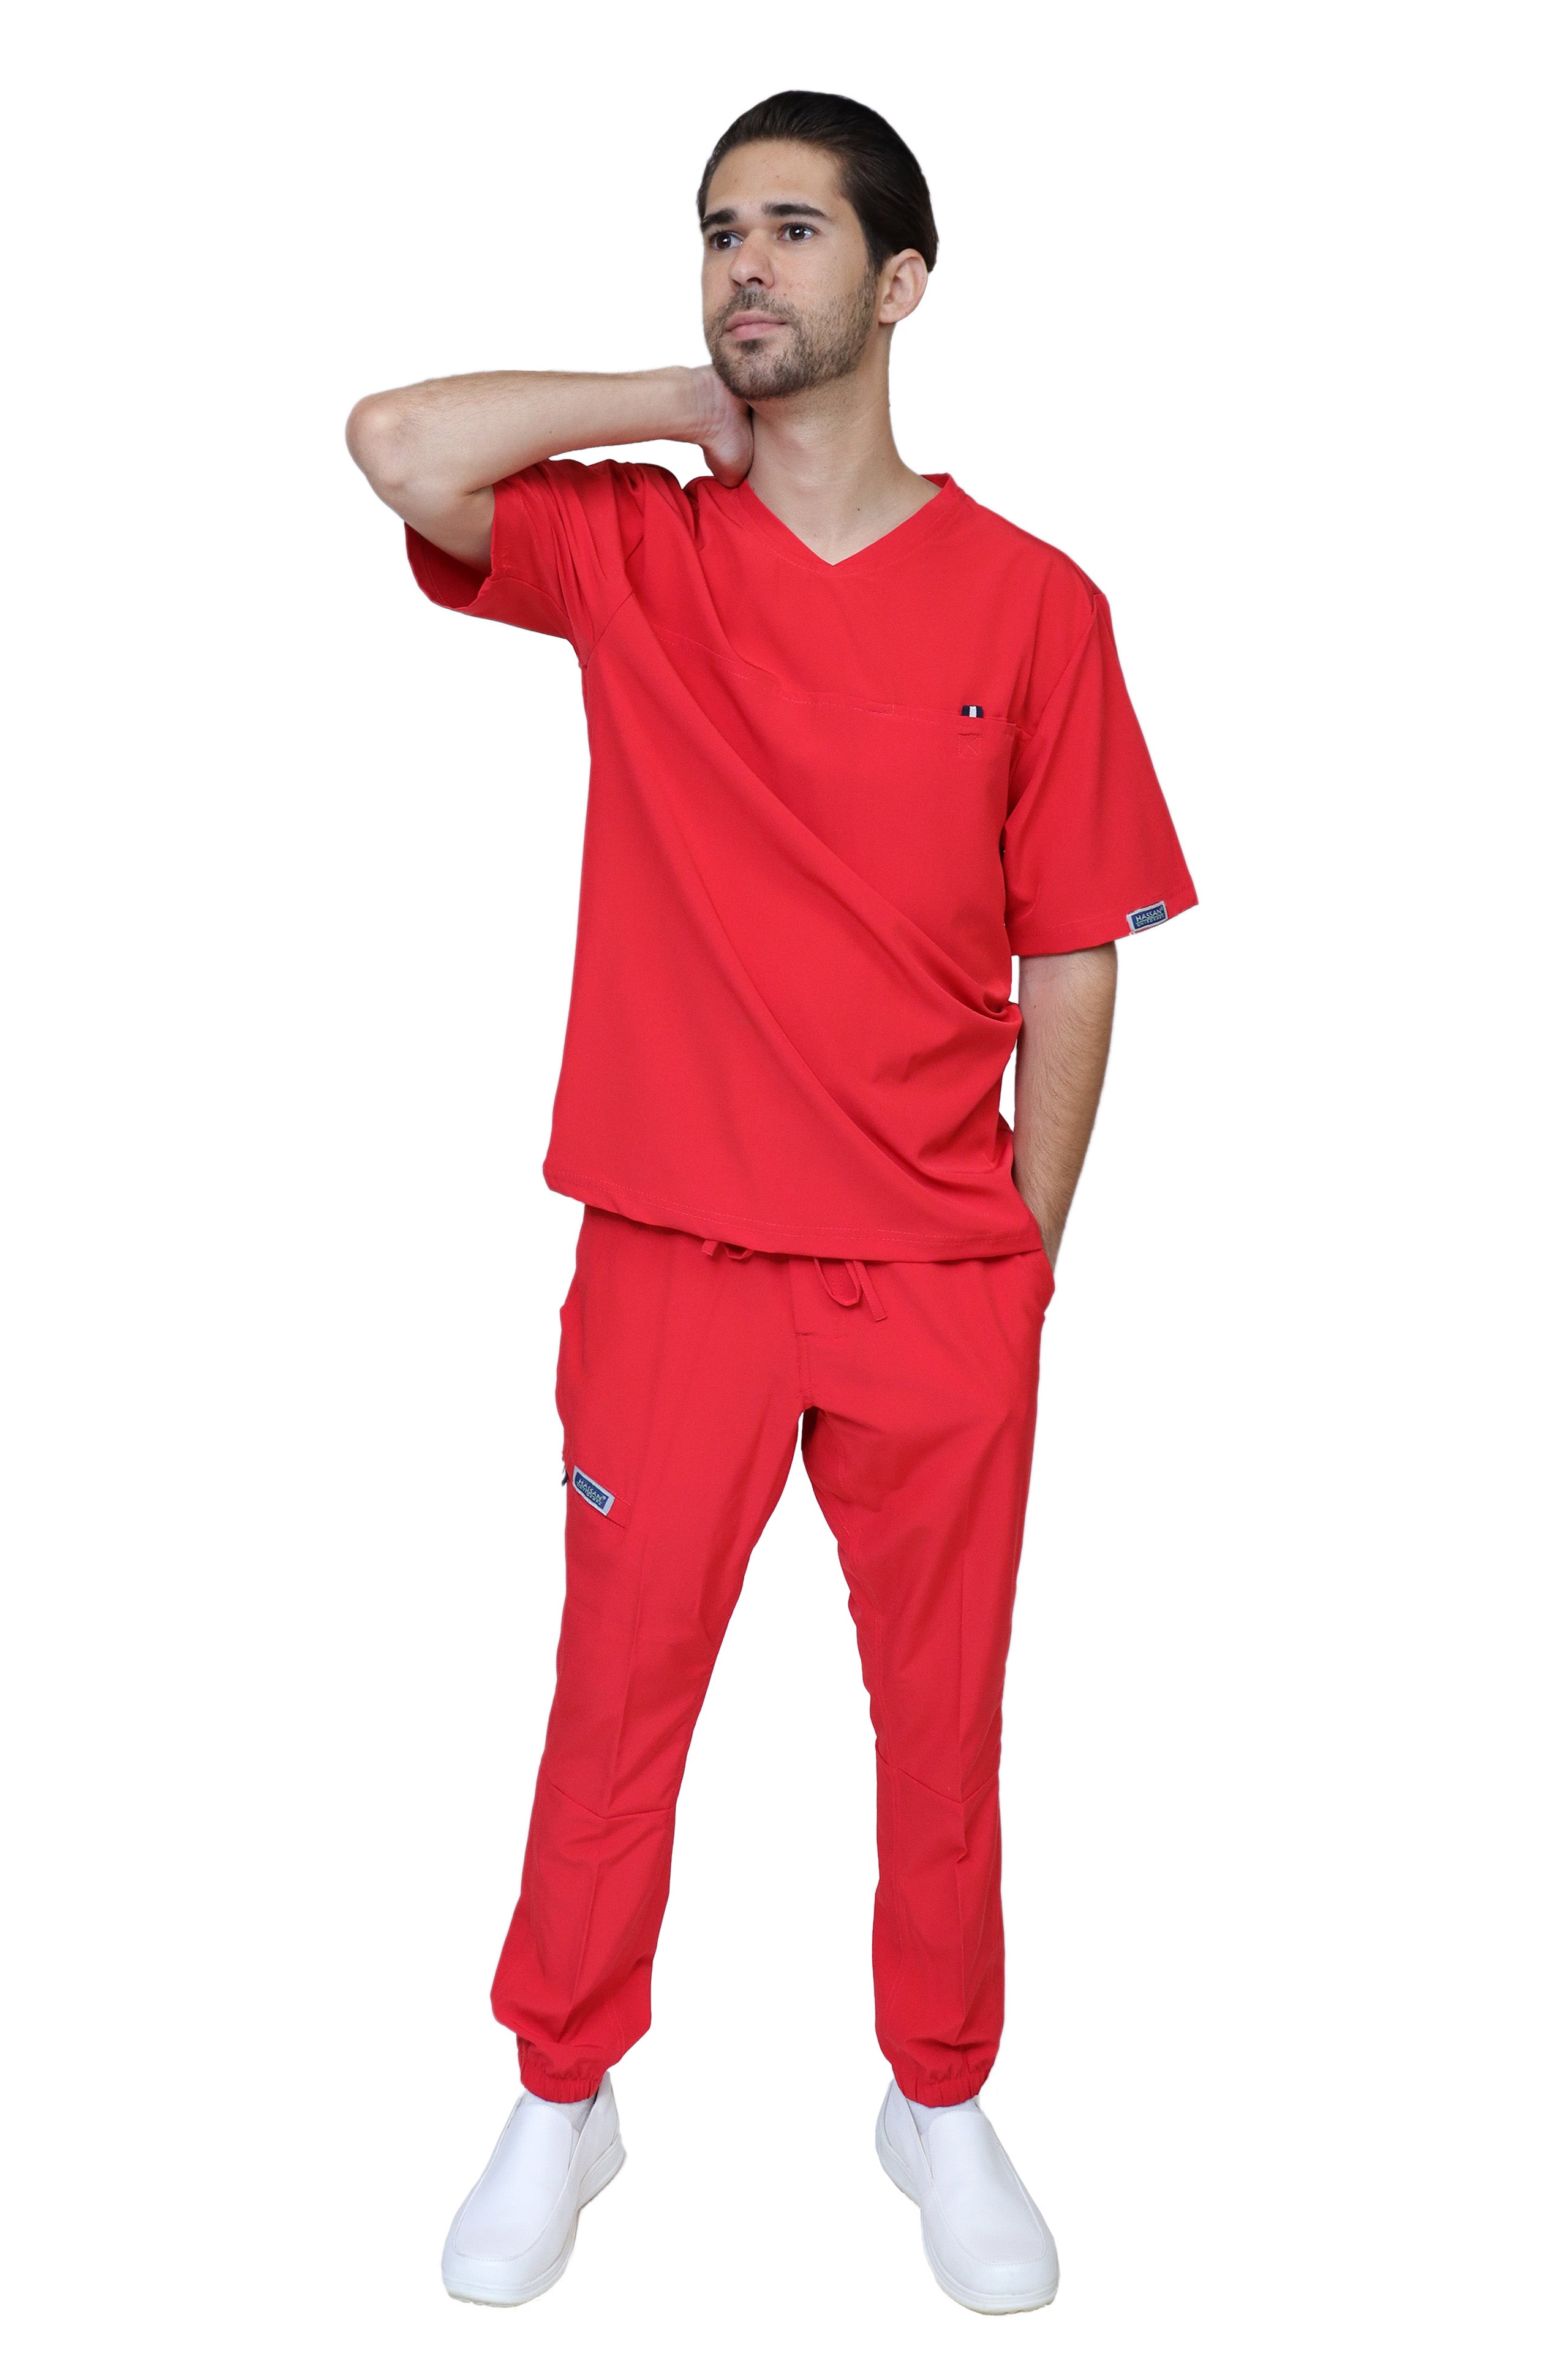 mens cool red pants  Combinar pantalon rojo hombre, Pantalon rojo